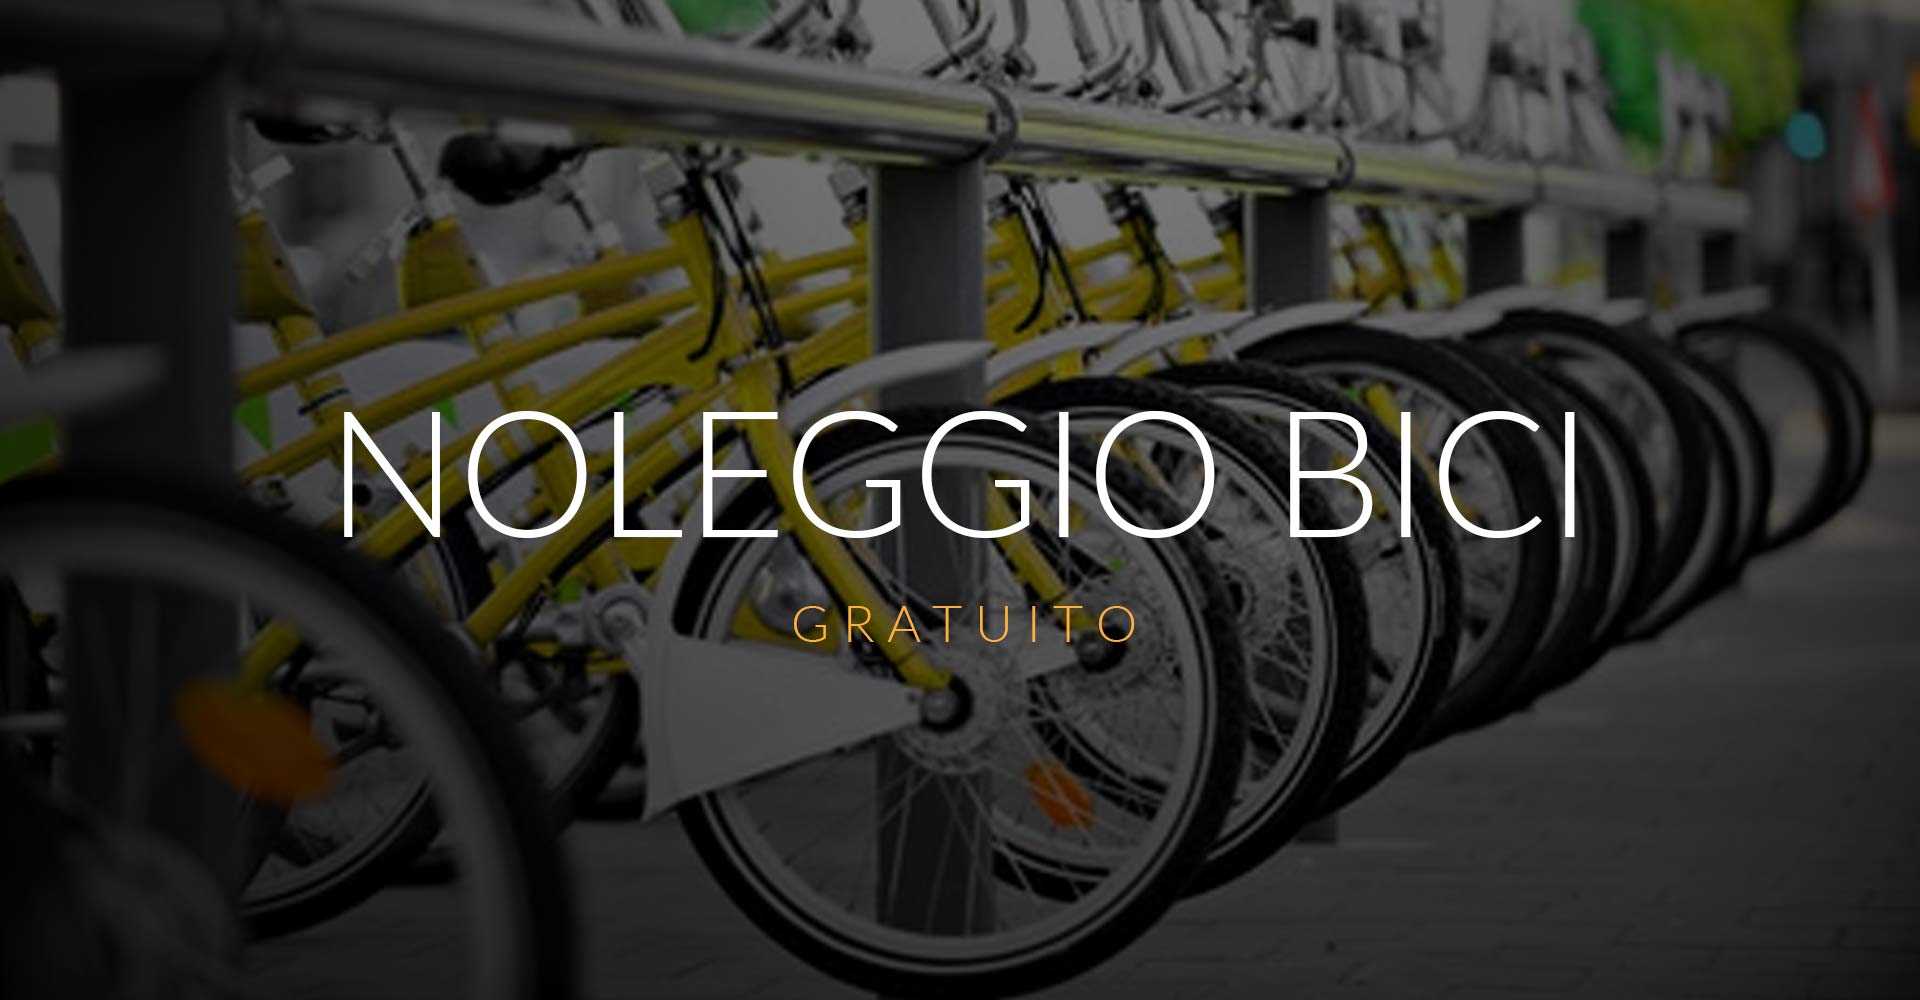 Slider Hp Hotel Maggiore Bologna Noleggio Bici Gratuito